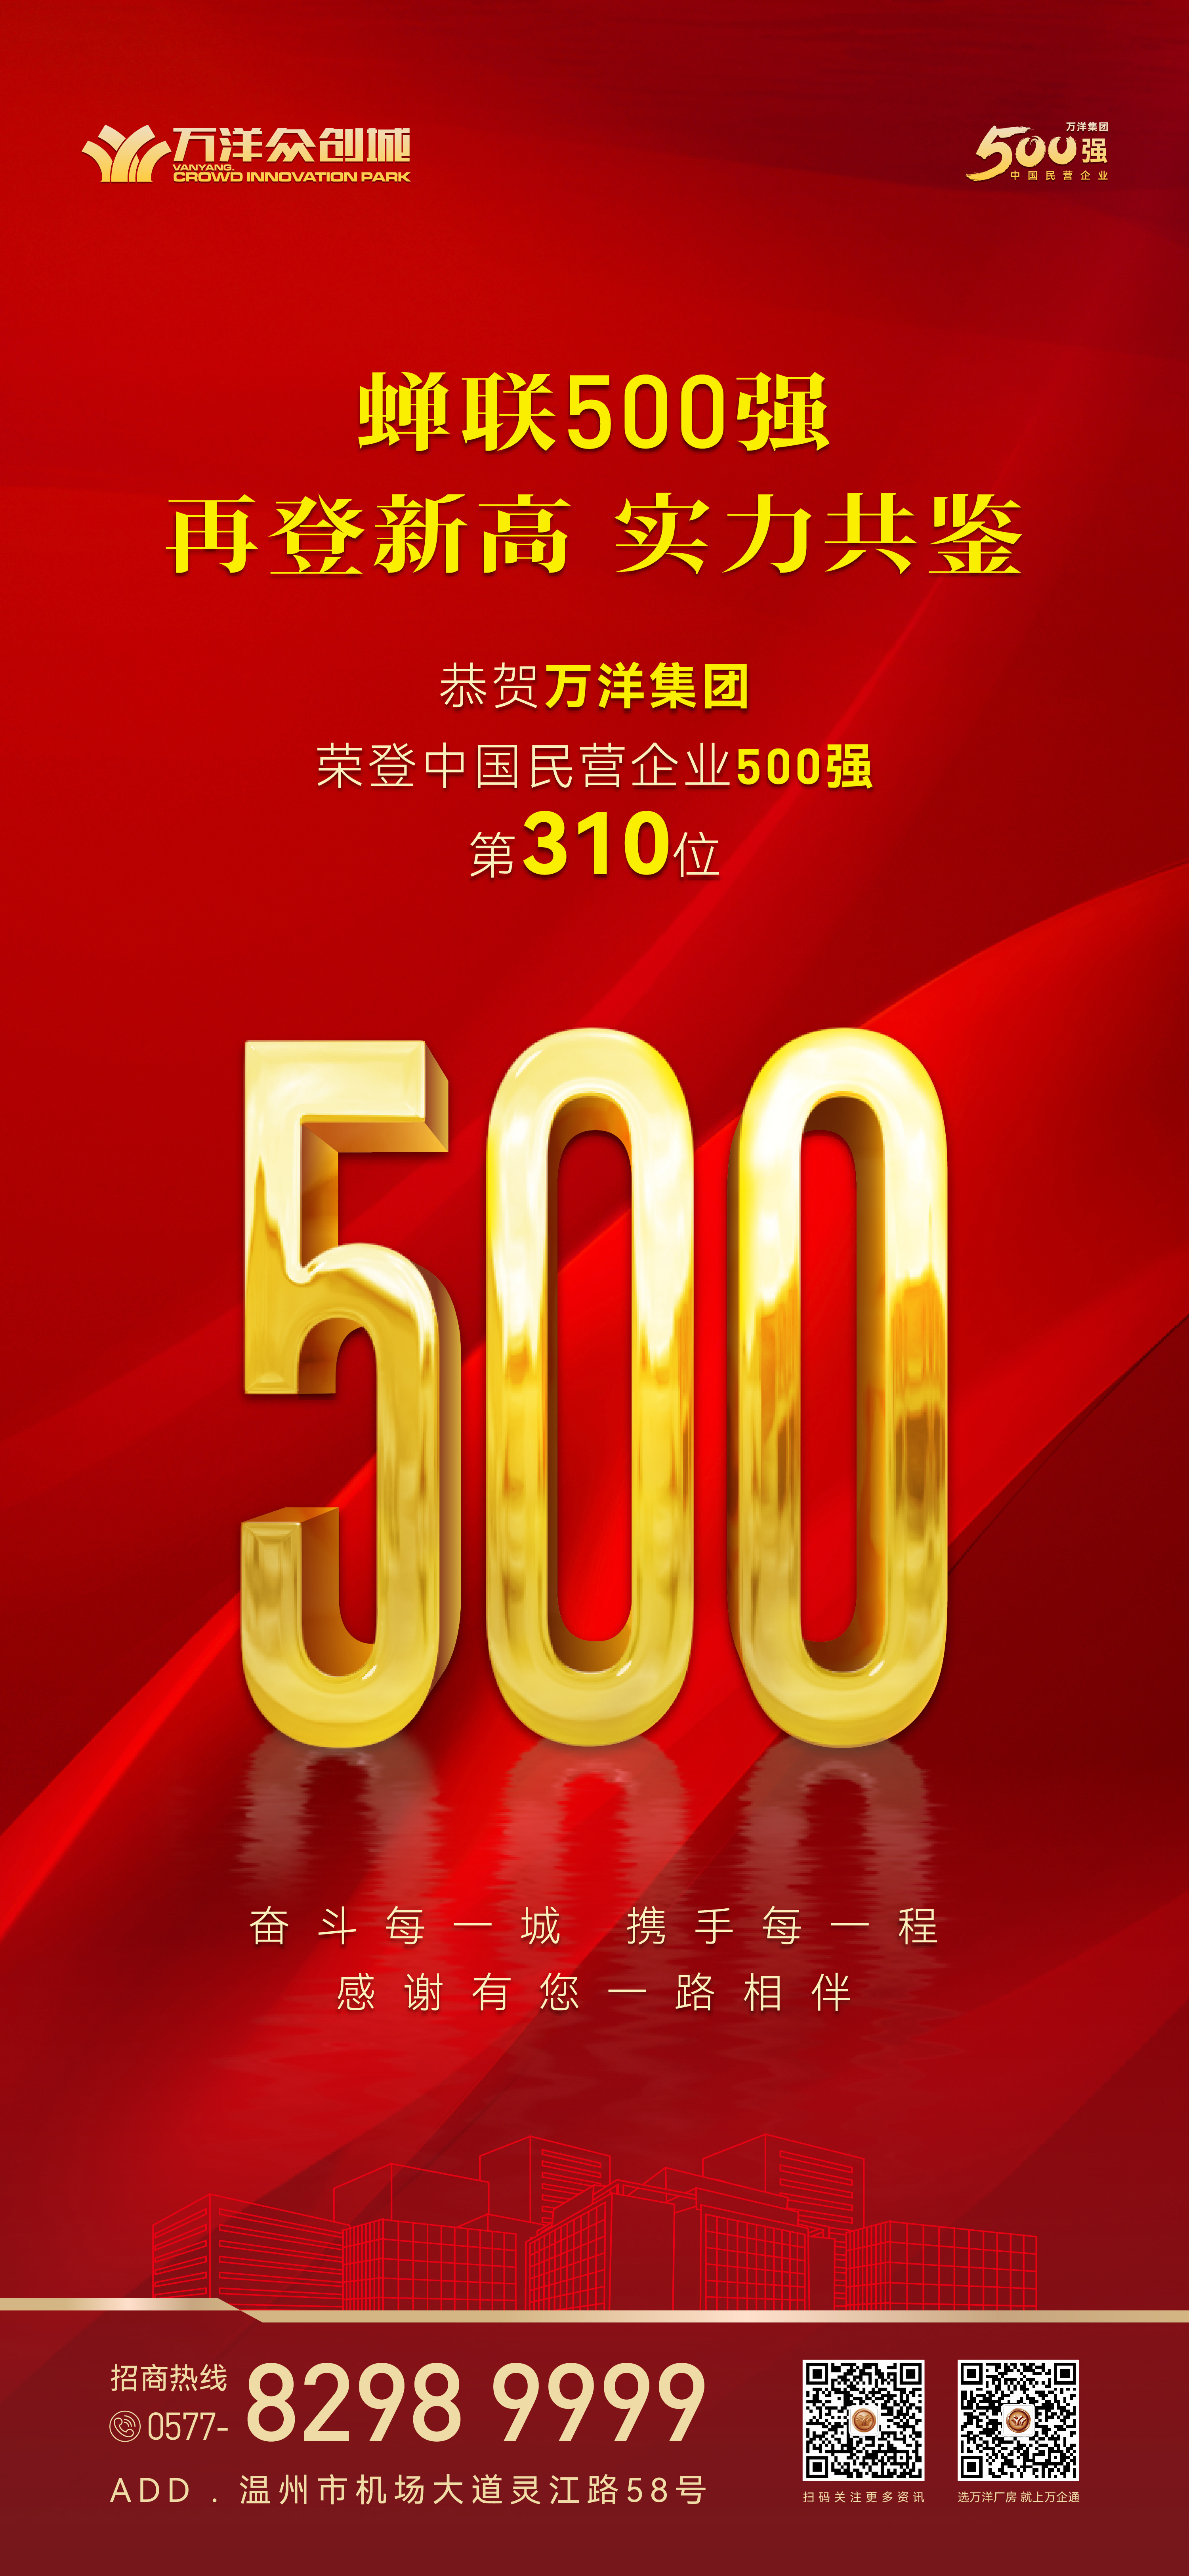  萬洋集團再登中國民營企業500強榜單